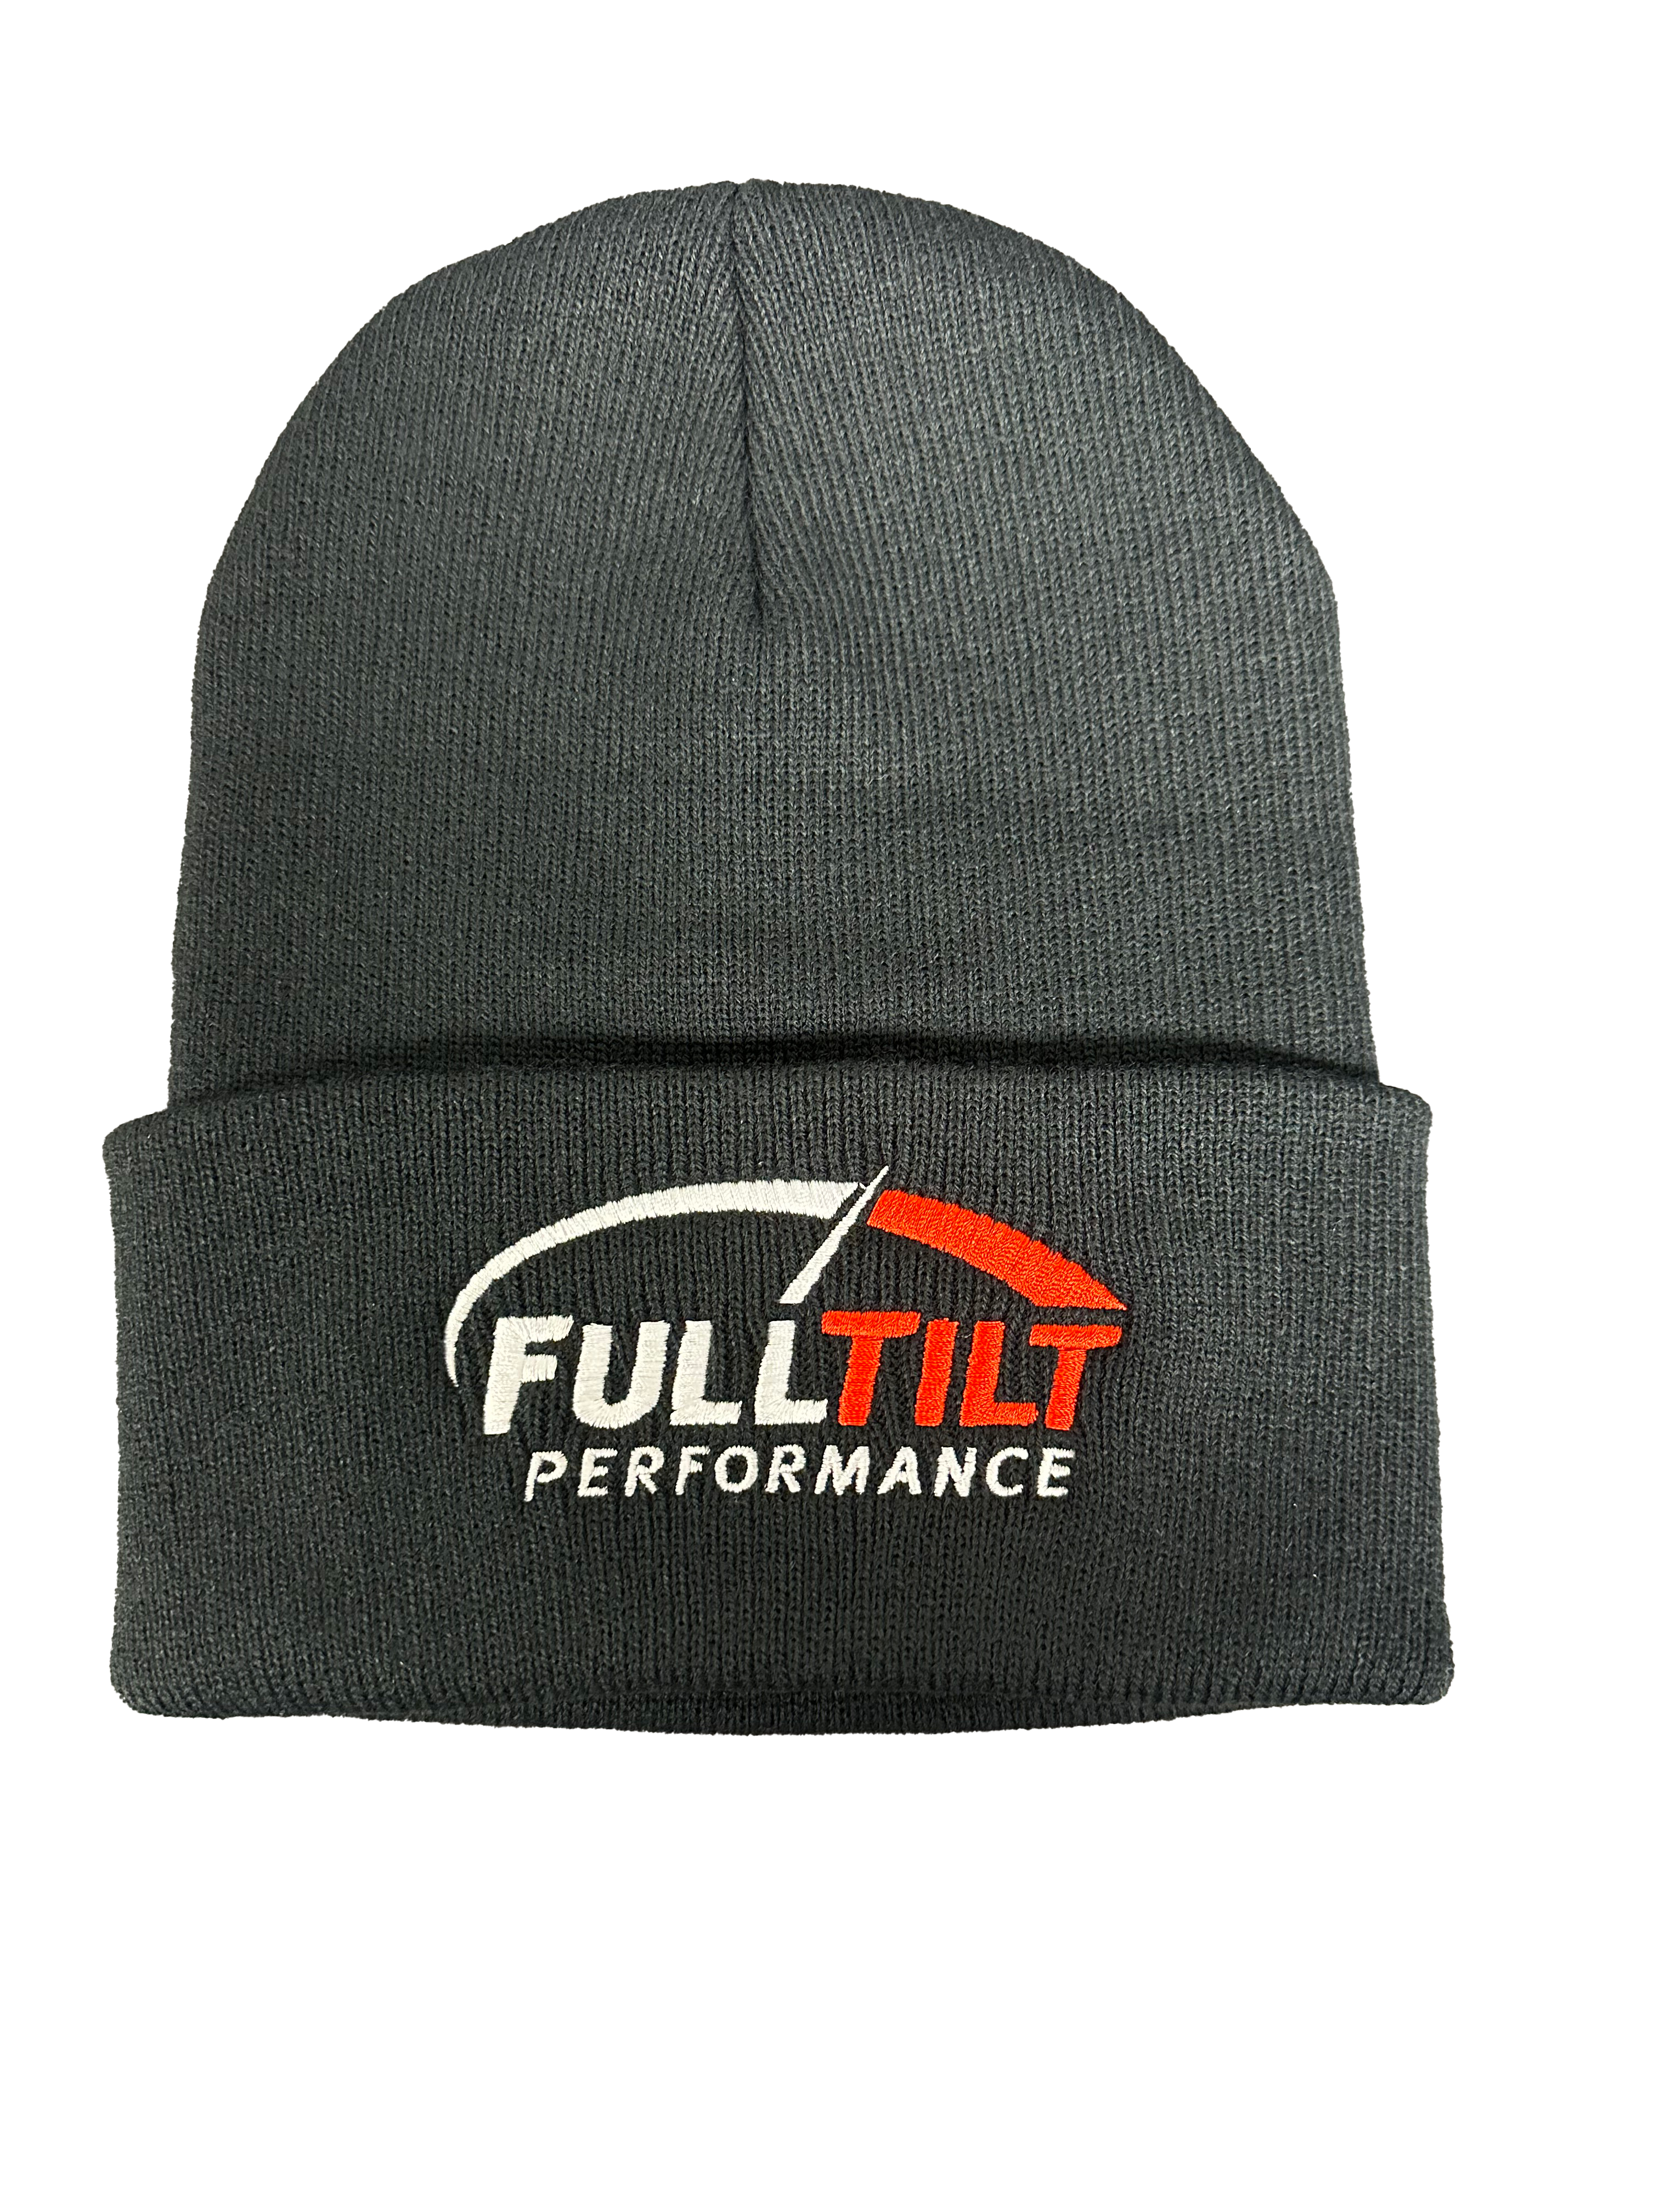 Full Tilt Performance Stocking Hat